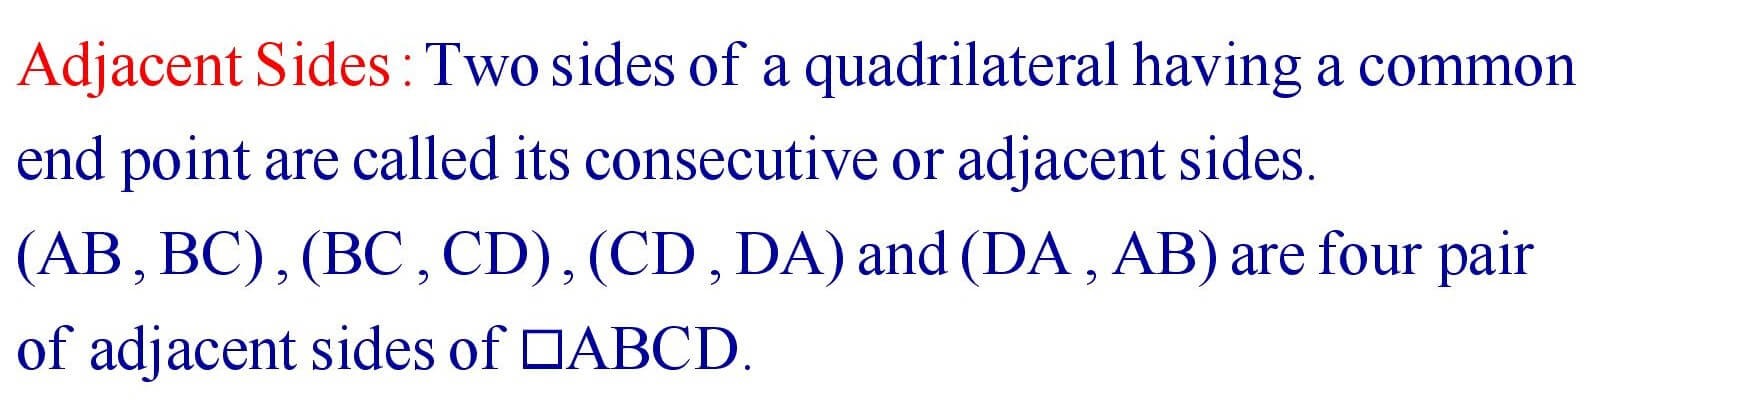 Adjacent Sides of Quadrilateral